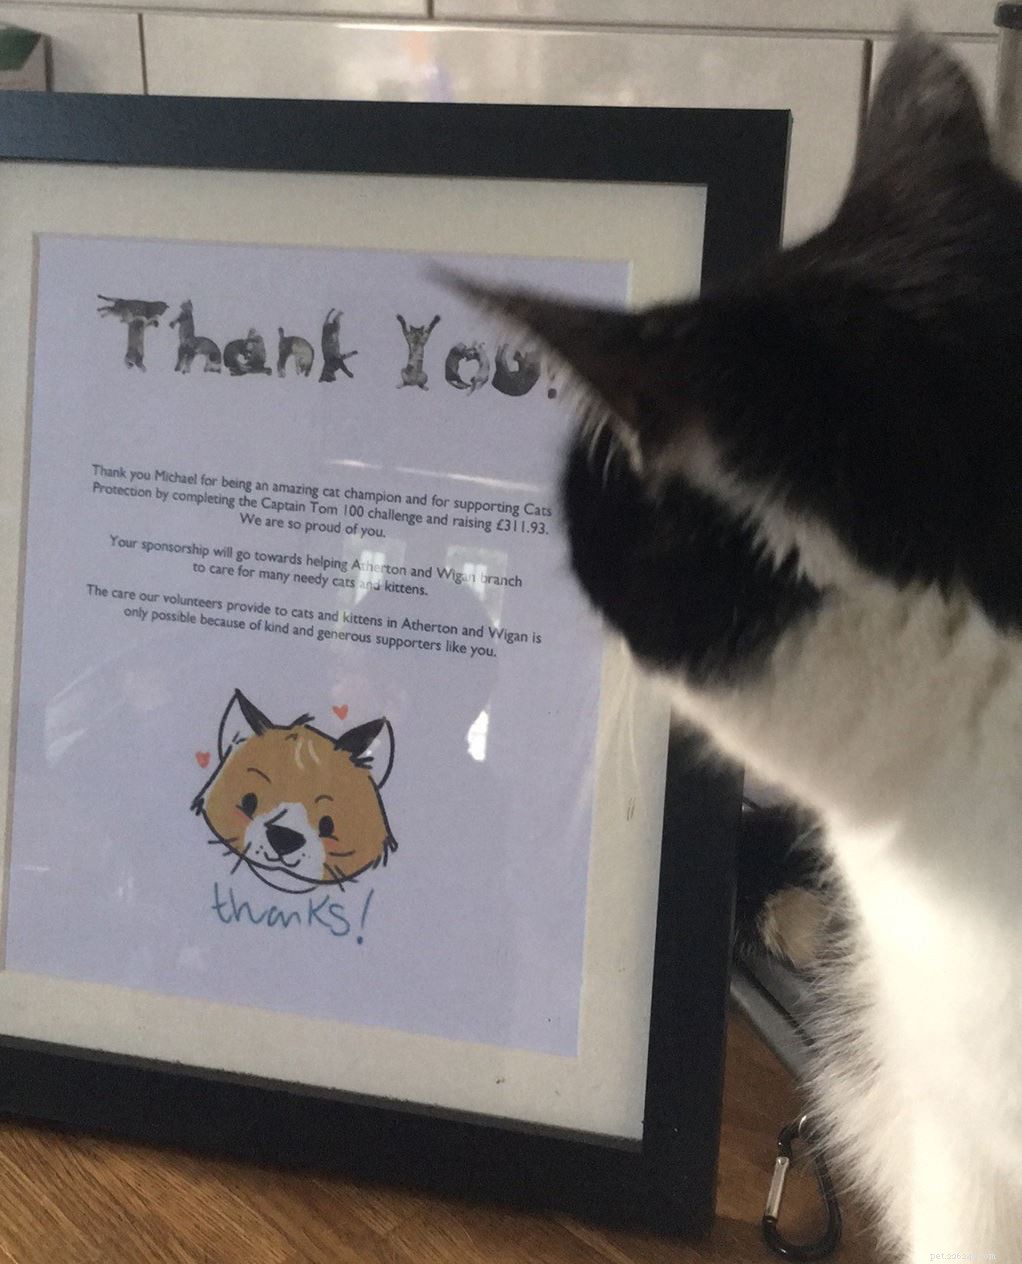 11-летний Майкл Харт из Уигана развлекал как кошек, так и подписчиков в Facebook, чтобы собрать 300 фунтов стерлингов на благотворительность, близкую его сердцу